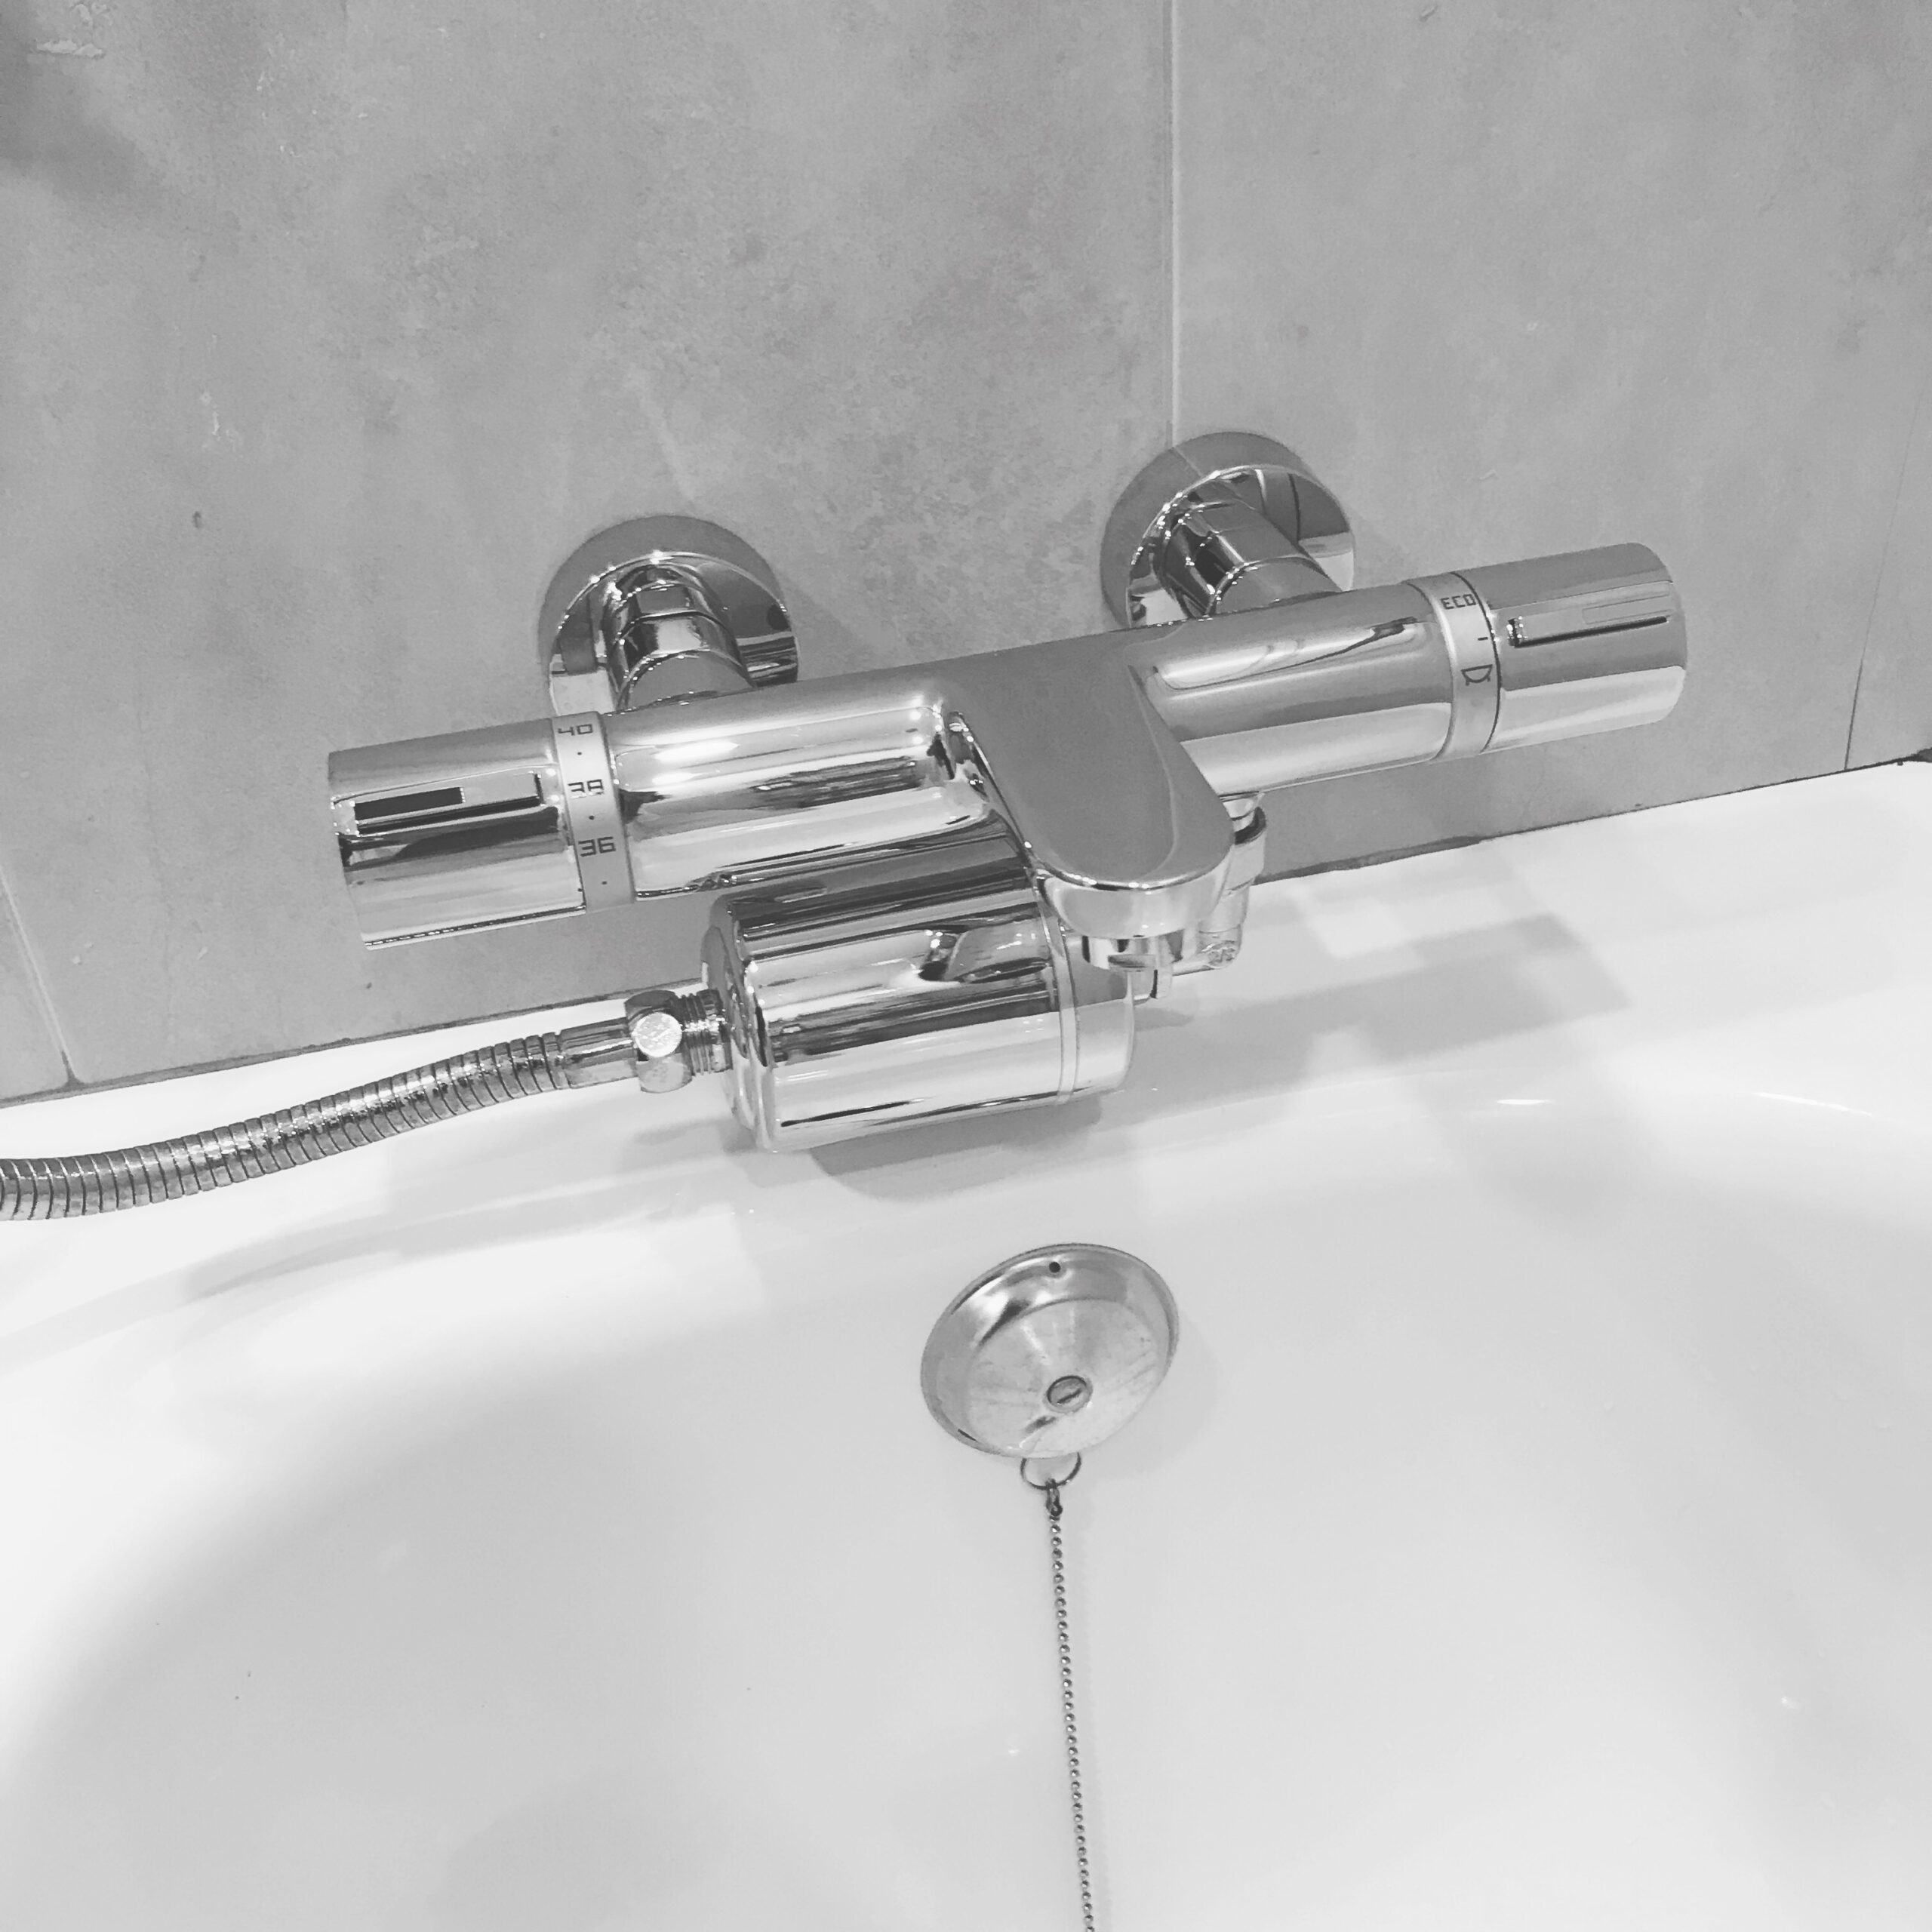 Filtro de ducha para agua dura – Filtro de ducha de 17 etapas y reemplazo  con vitamina C – Filtro de ducha revitalizante de alto rendimiento – Filtro